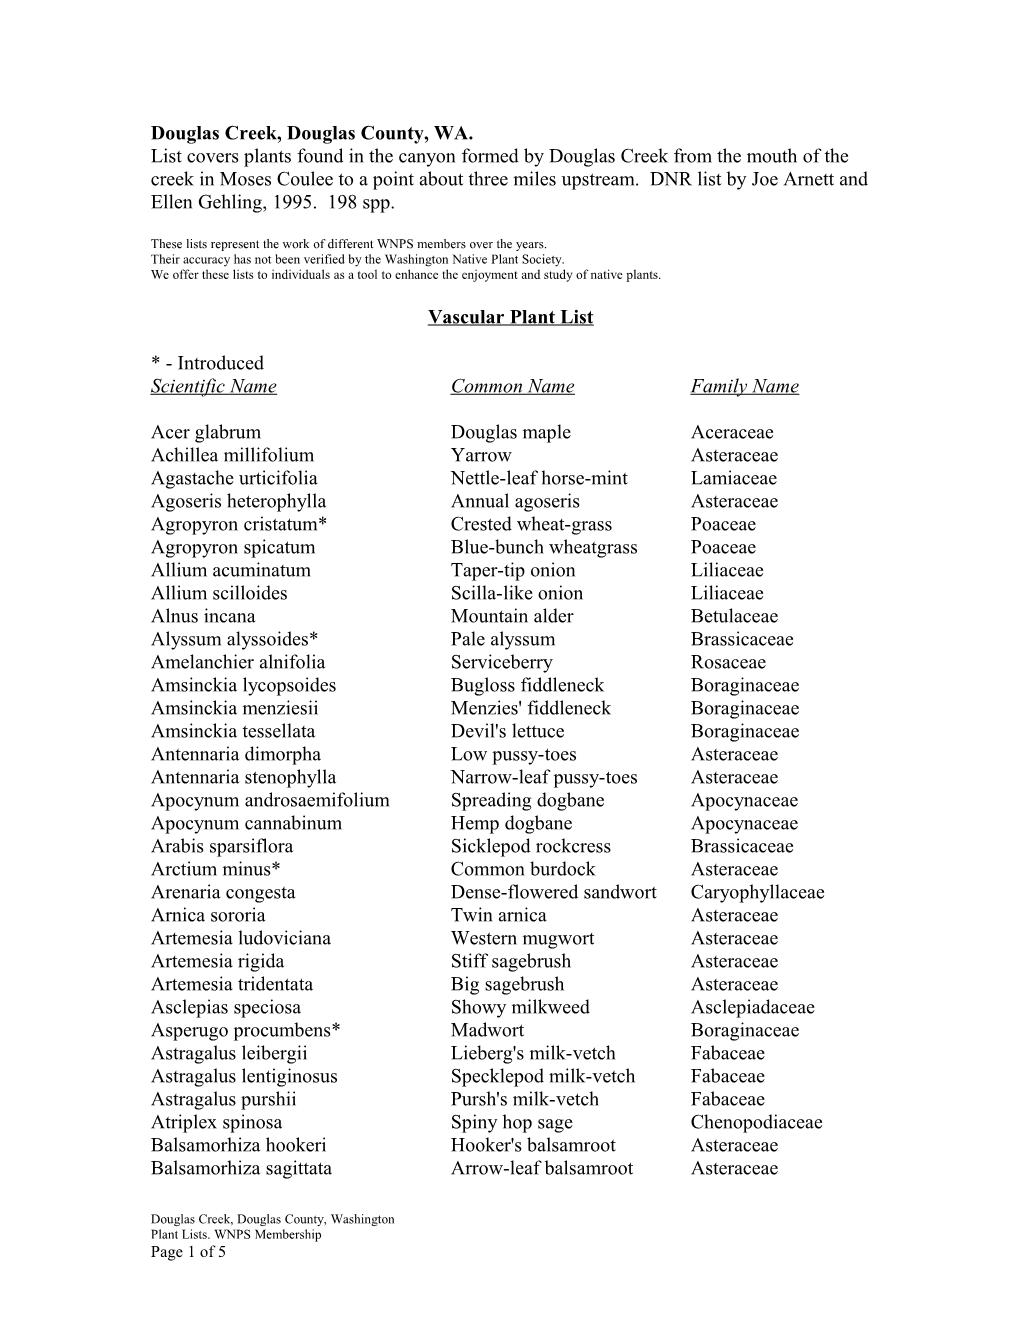 Vascular Plant List s9